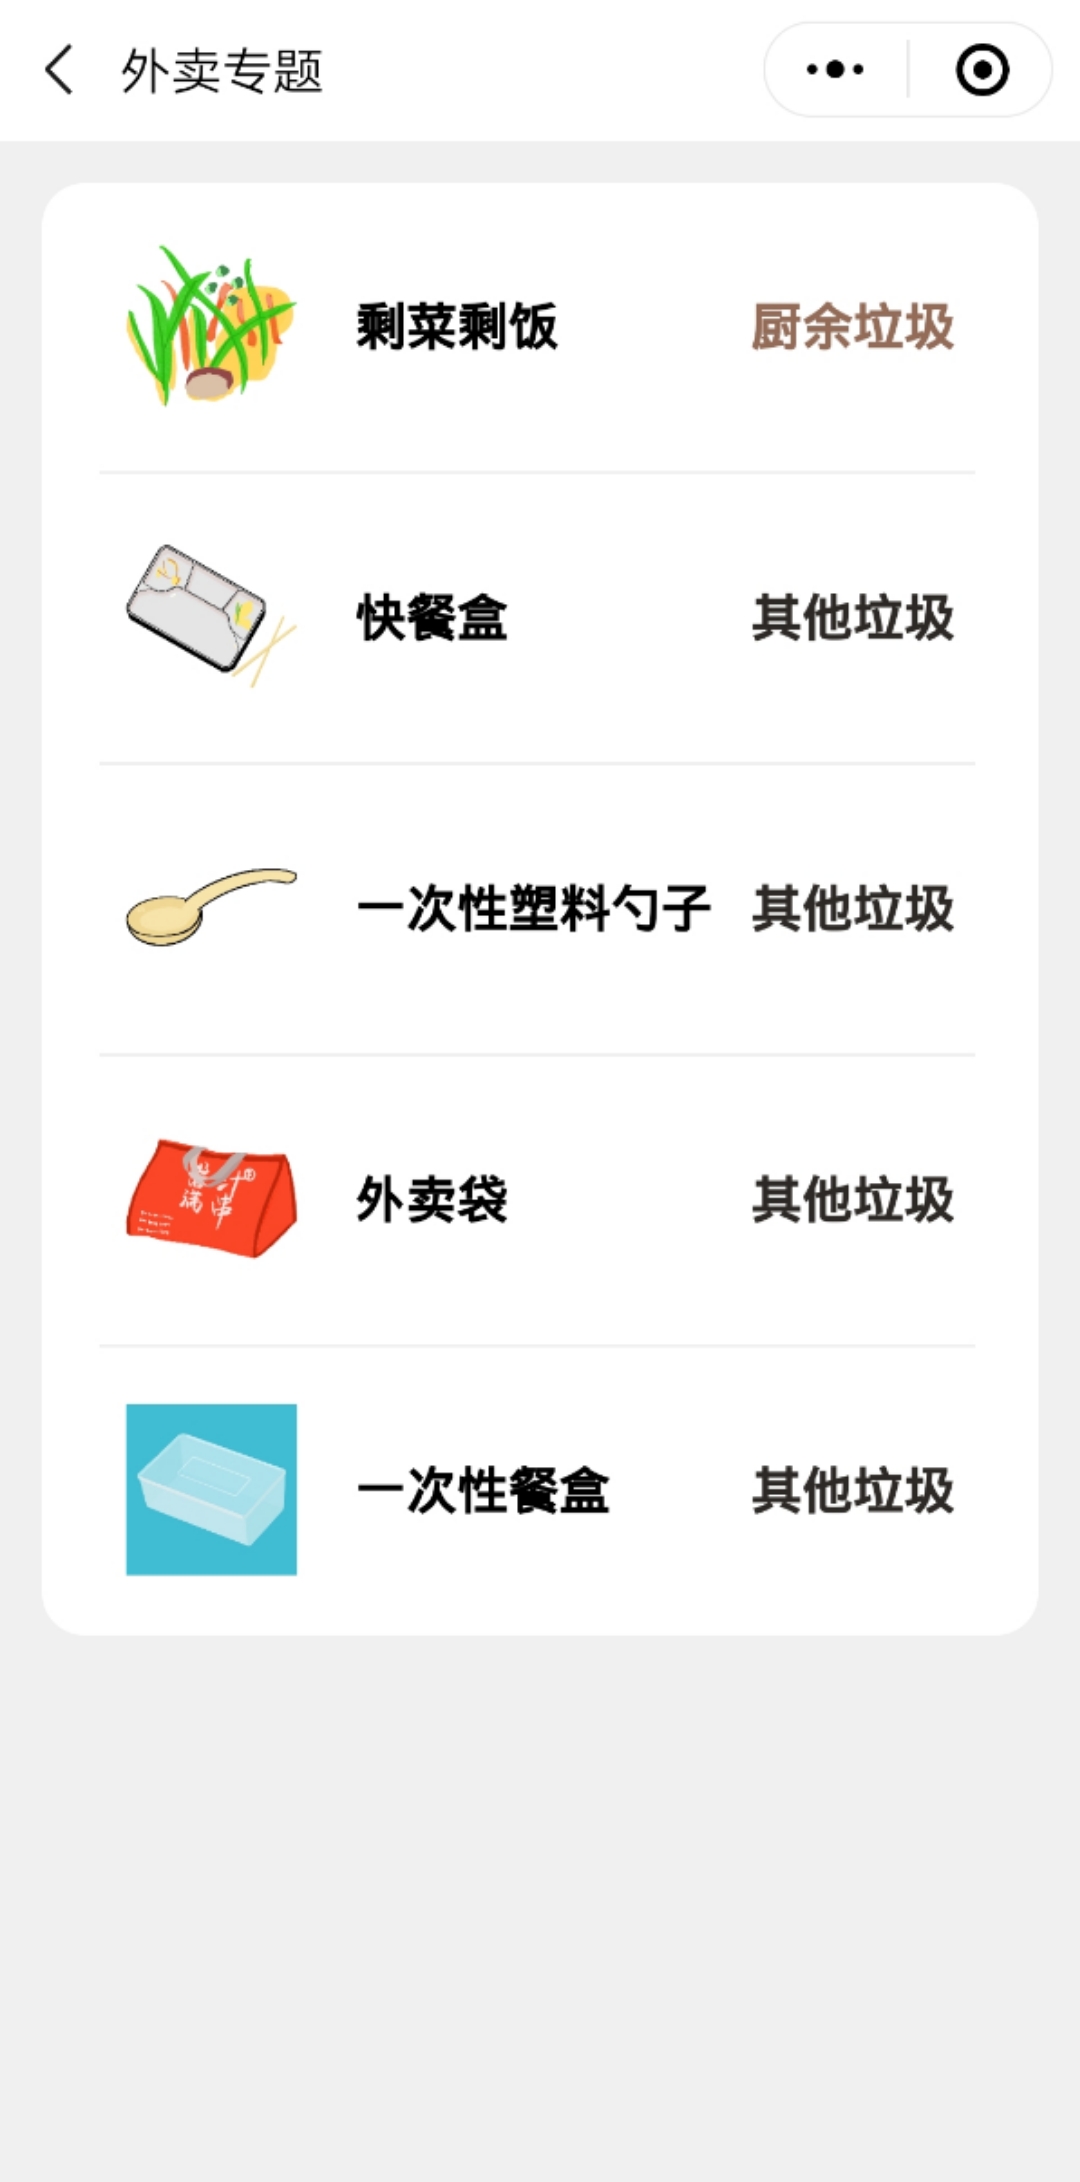 杭州垃圾分类指南_杭州垃圾分类指南小程序_杭州垃圾分类指南微信小程序